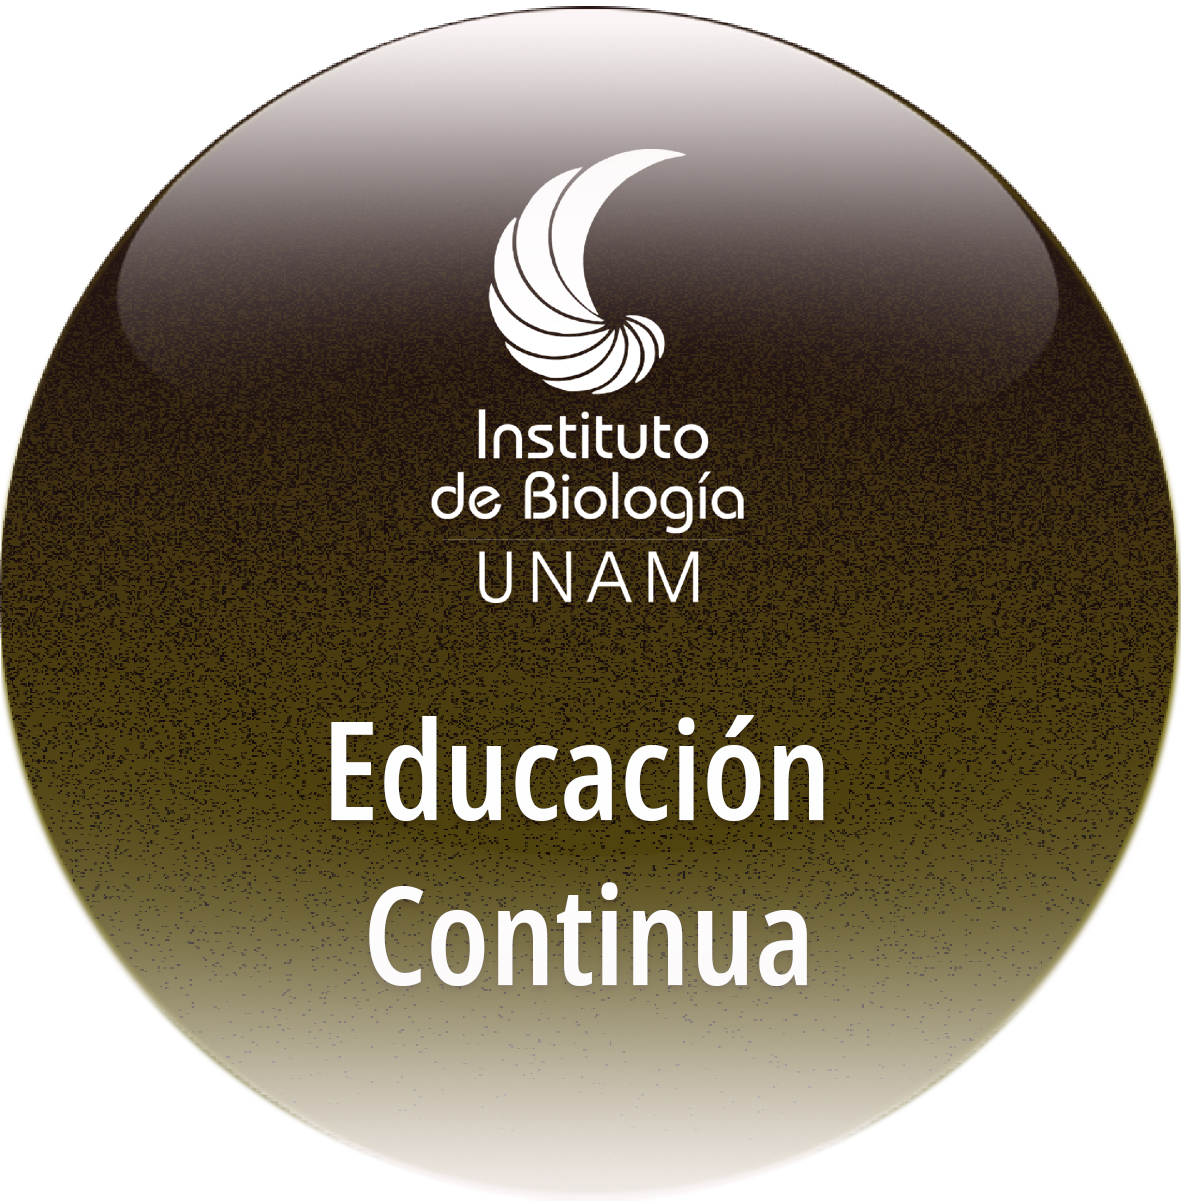 Educación continua - Instituto de Biología, UNAM